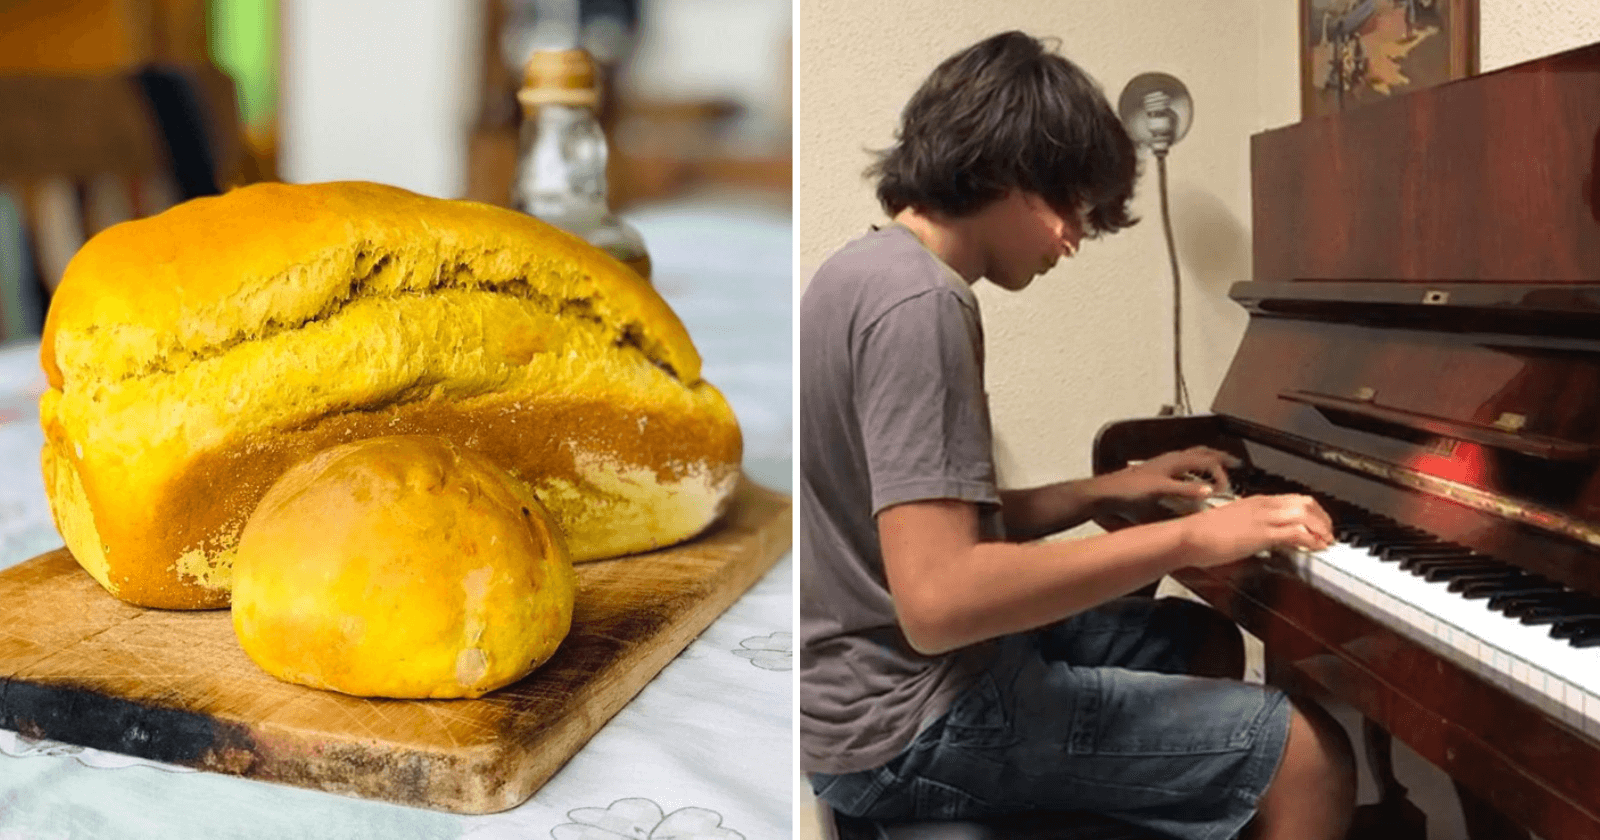 Garoto de 13 anos trabalha por um ano vendendo pães e consegue dinheiro para realizar seu sonho